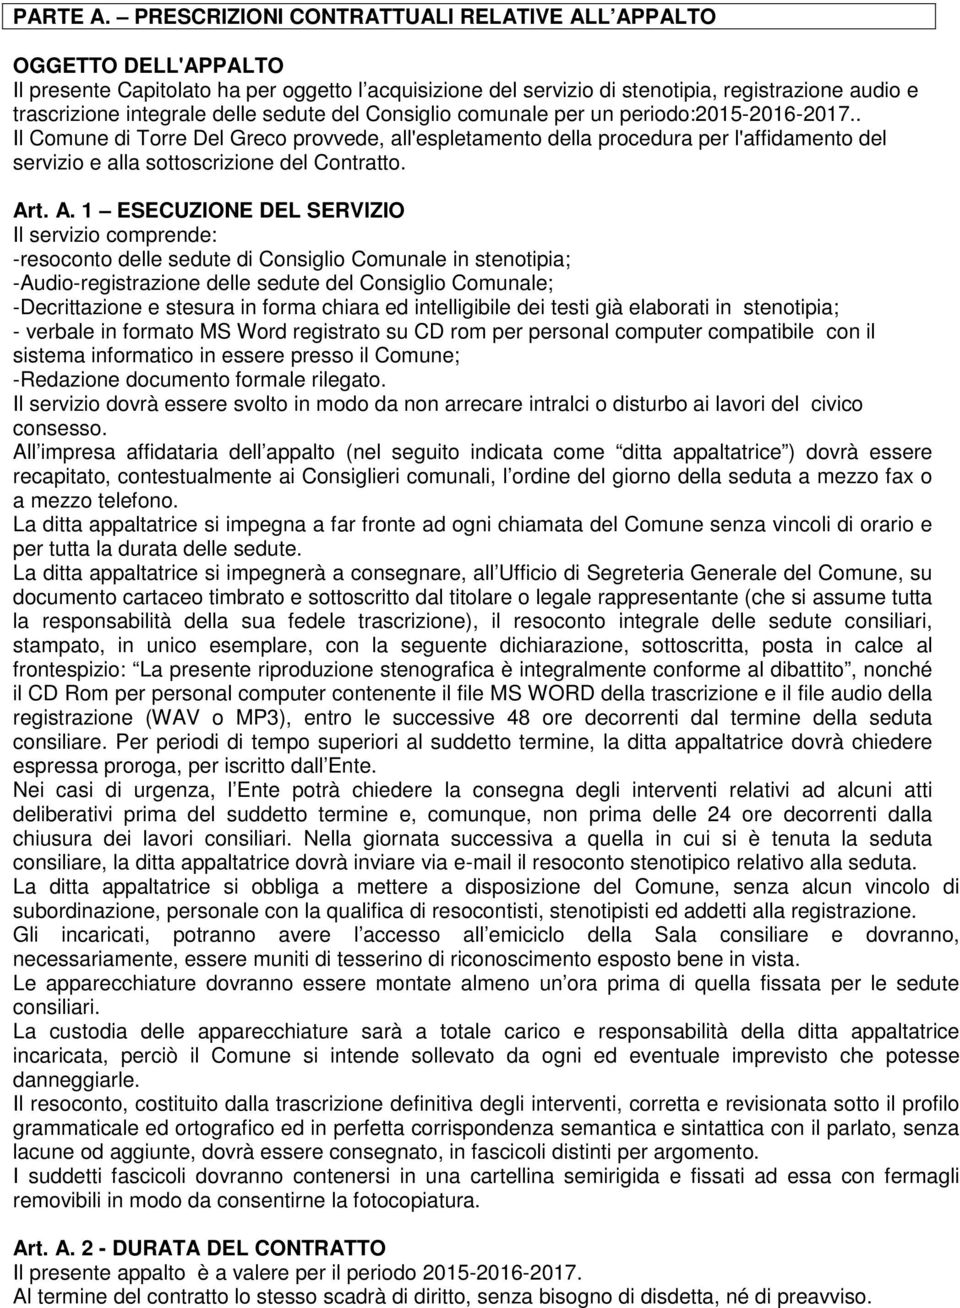 sedute del Consiglio comunale per un periodo:2015-2016-2017.. Il Comune di Torre Del Greco provvede, all'espletamento della procedura per l'affidamento del servizio e alla sottoscrizione del Contratto.